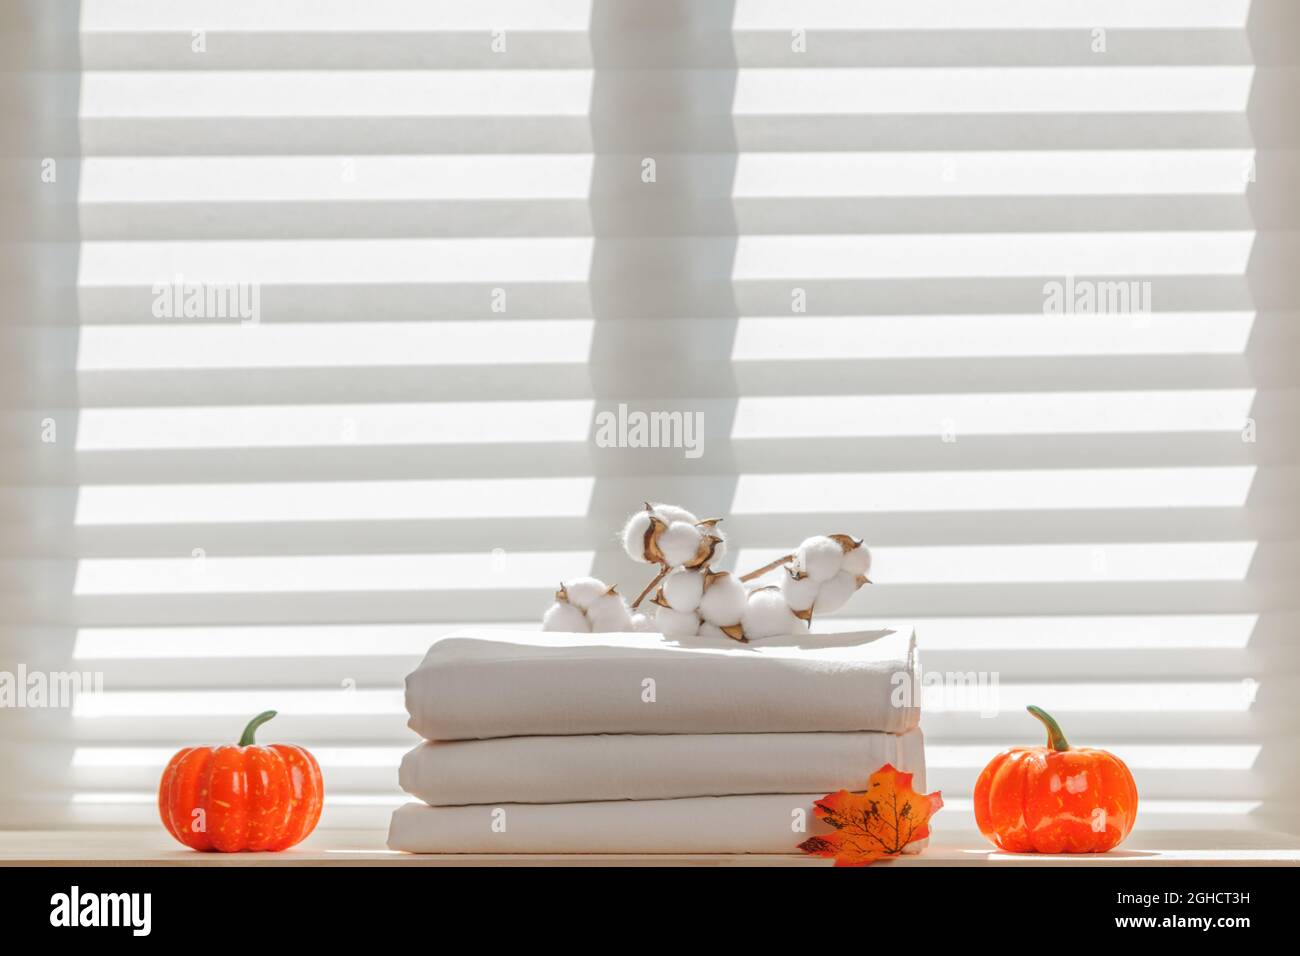 Weiße Bettwäsche, Laken mit einem Baumwollzweig vor dem Hintergrund des Fensters. Natürliche Zusammensetzung. Konzept der Herbstfeier und Halloween-Feier. Stockfoto